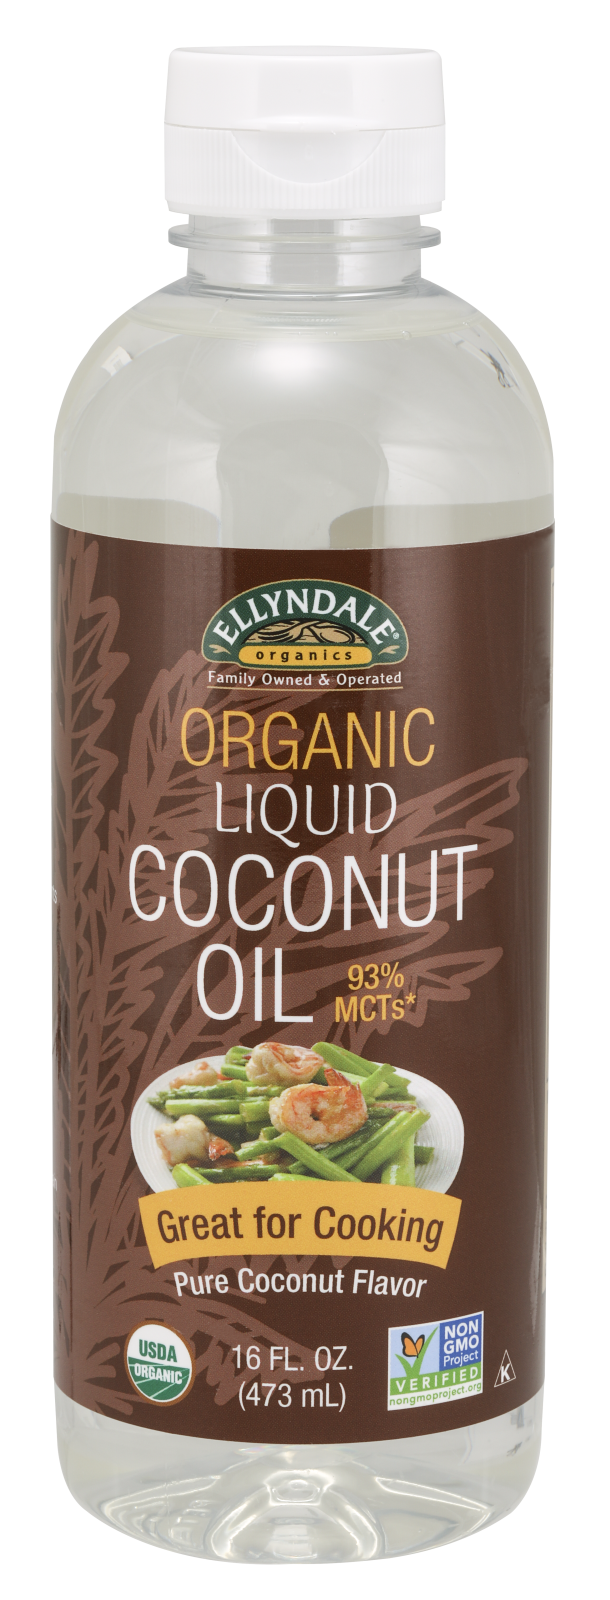 Liquid Coconut Cooking Oil - 16 fl. oz.